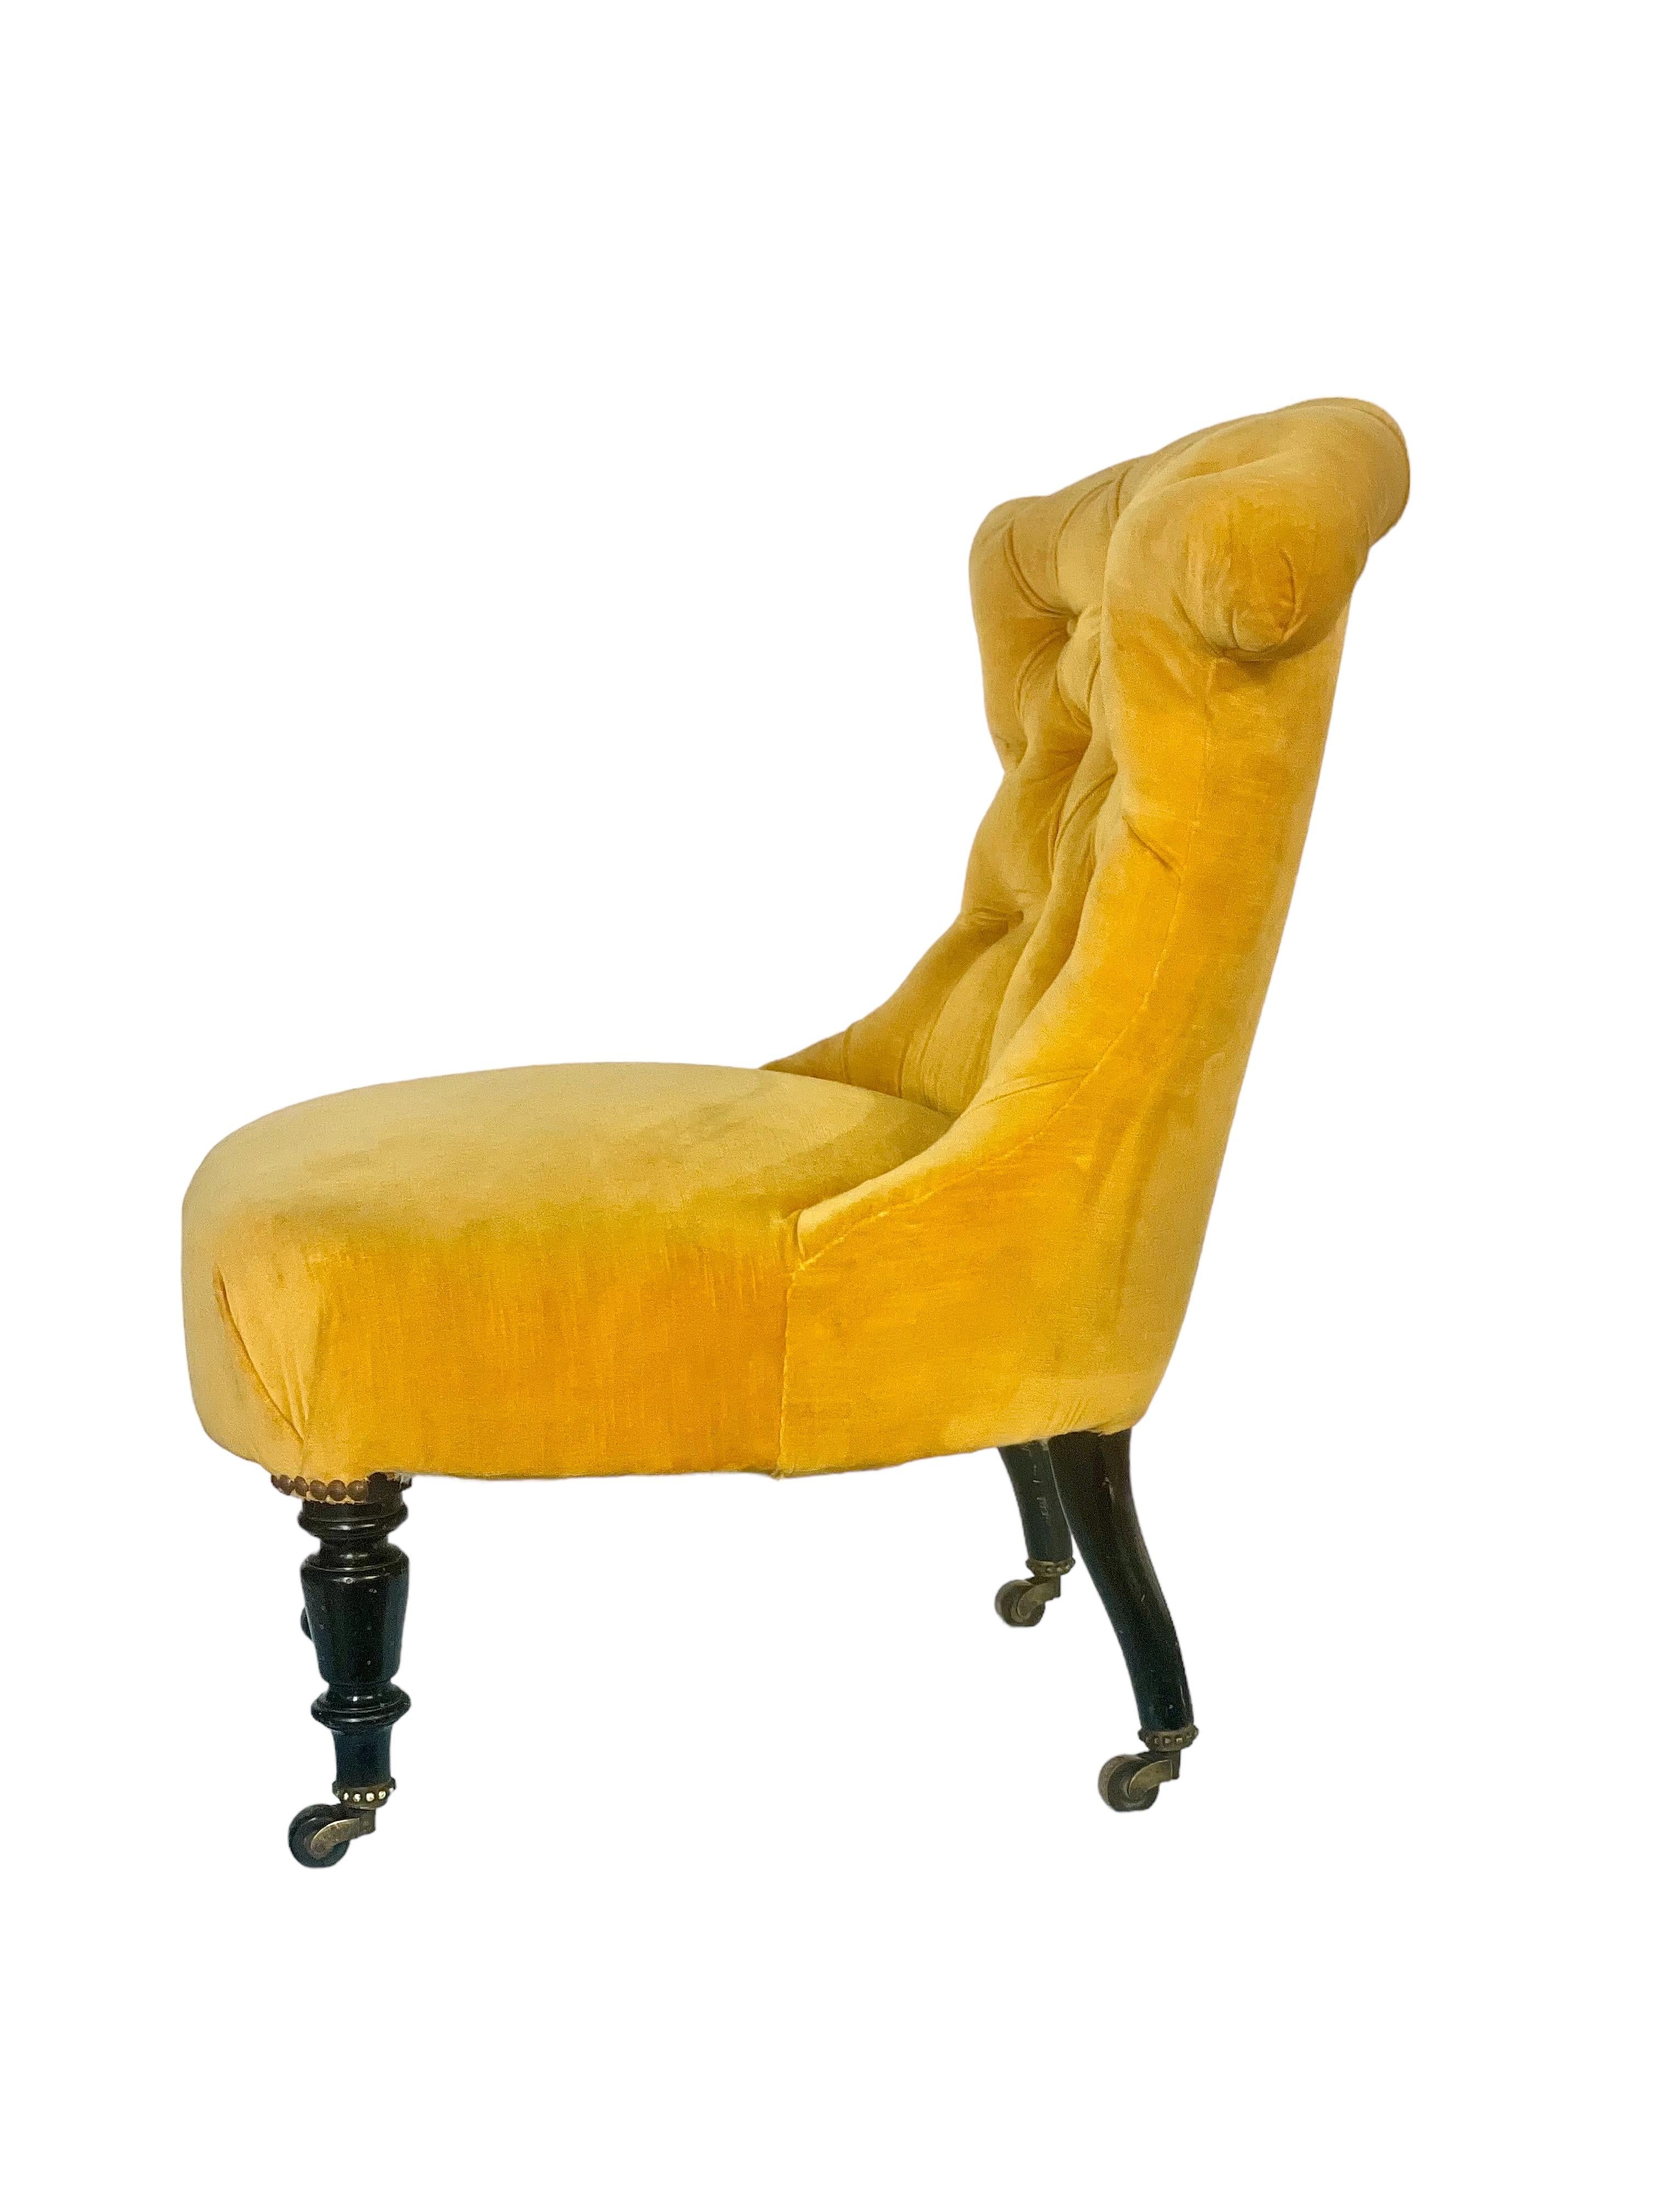 Ein hübscher Napoleon-III-Kaminsessel mit tief geknöpfter Rückenlehne, luxuriöser gelber Samtpolsterung und gefedertem Sitz. Dieser wunderschöne und sehr bequeme Stuhl stammt aus der Zeit um 1860-80 und hat seine schönen originalen ebonisierten